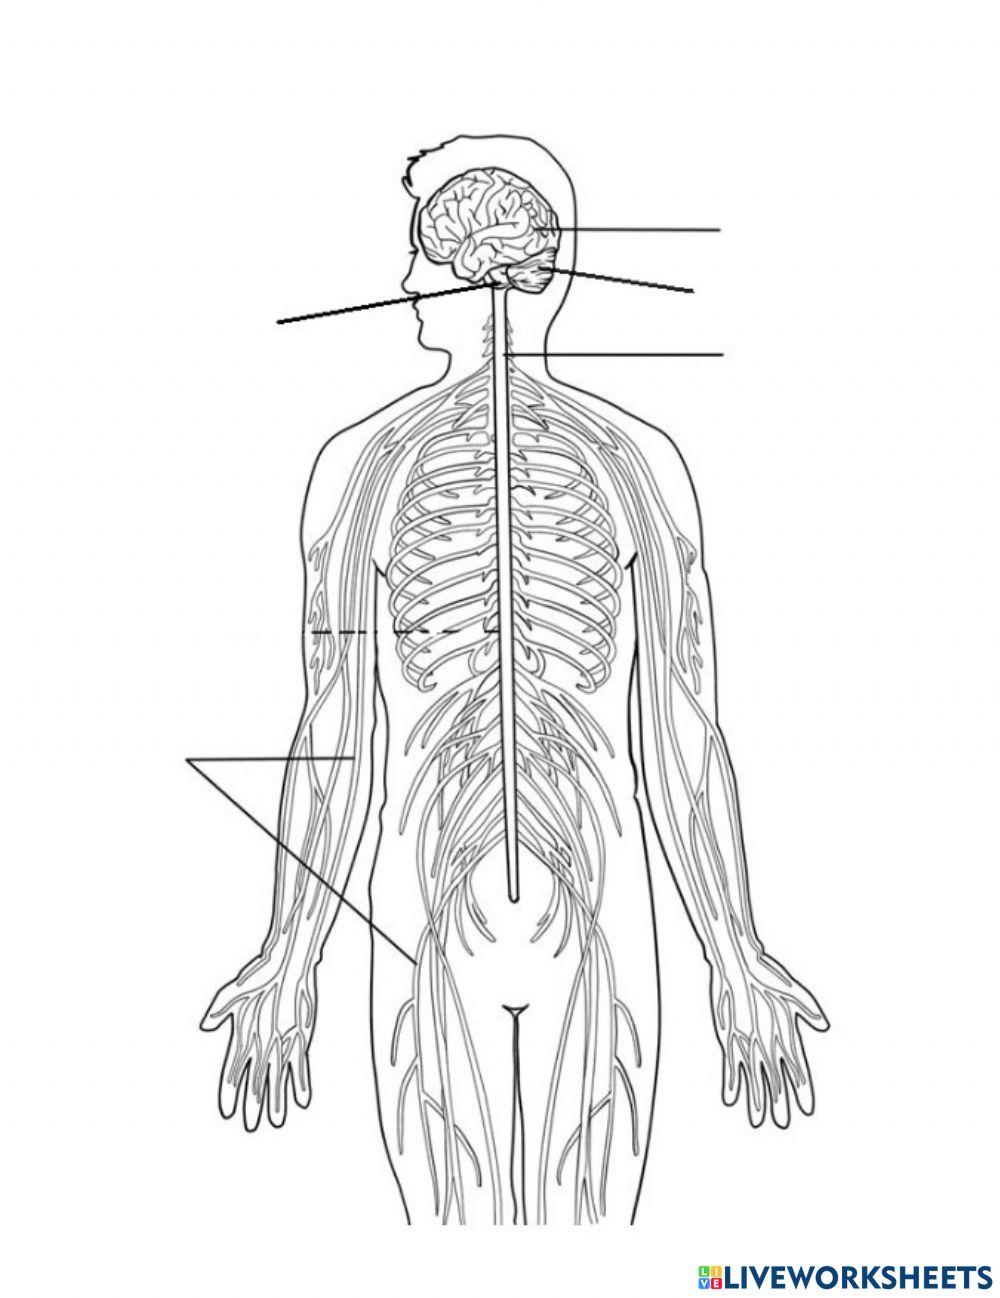 Sistema nerviós